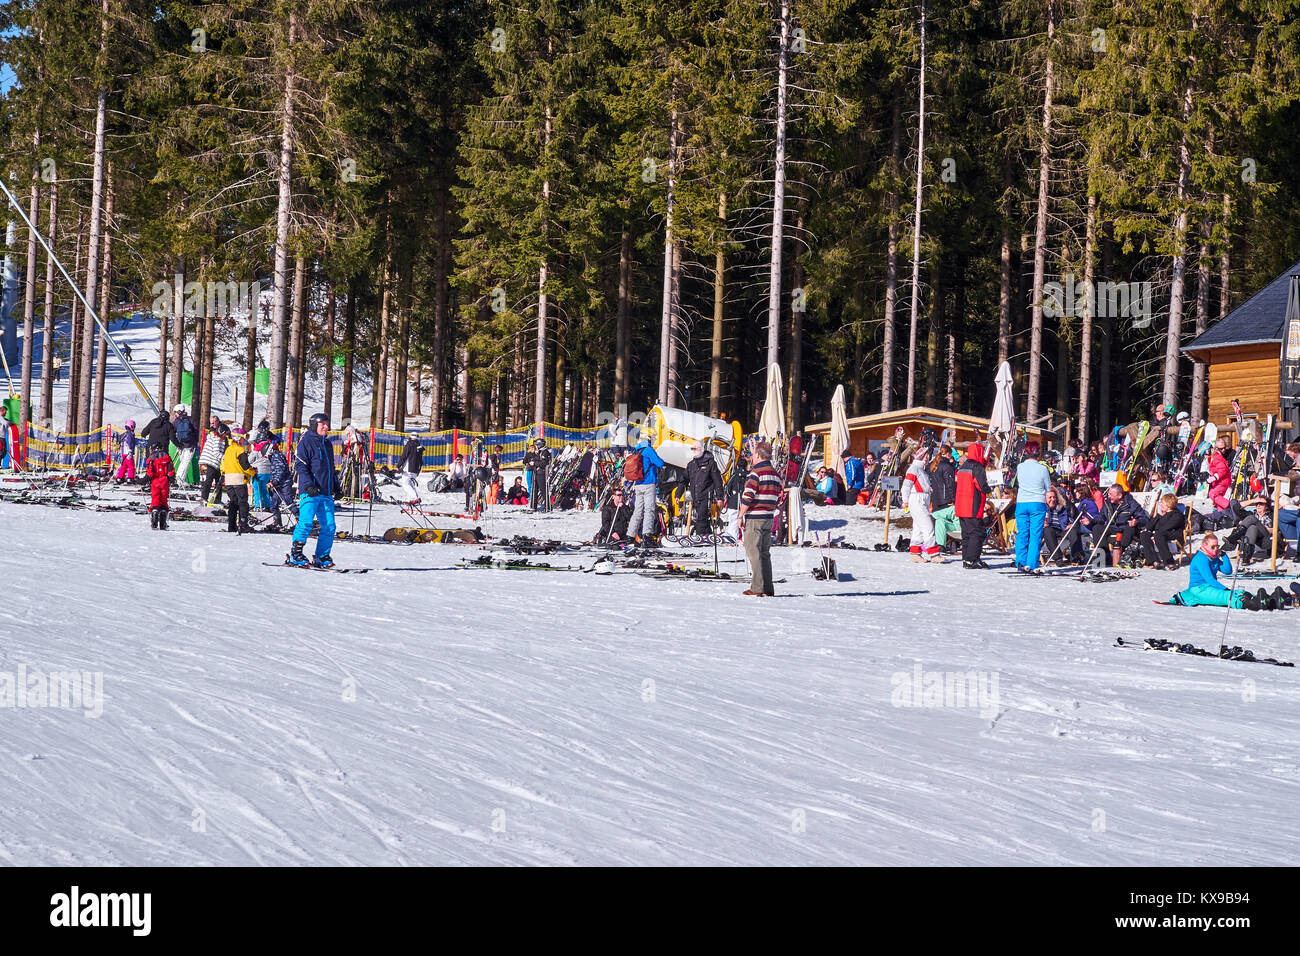 WINTERBERG, ALLEMAGNE - 15 février 2017 : Grand groupe de personnes qui prend une pause à carrousel de ski de Winterberg Banque D'Images